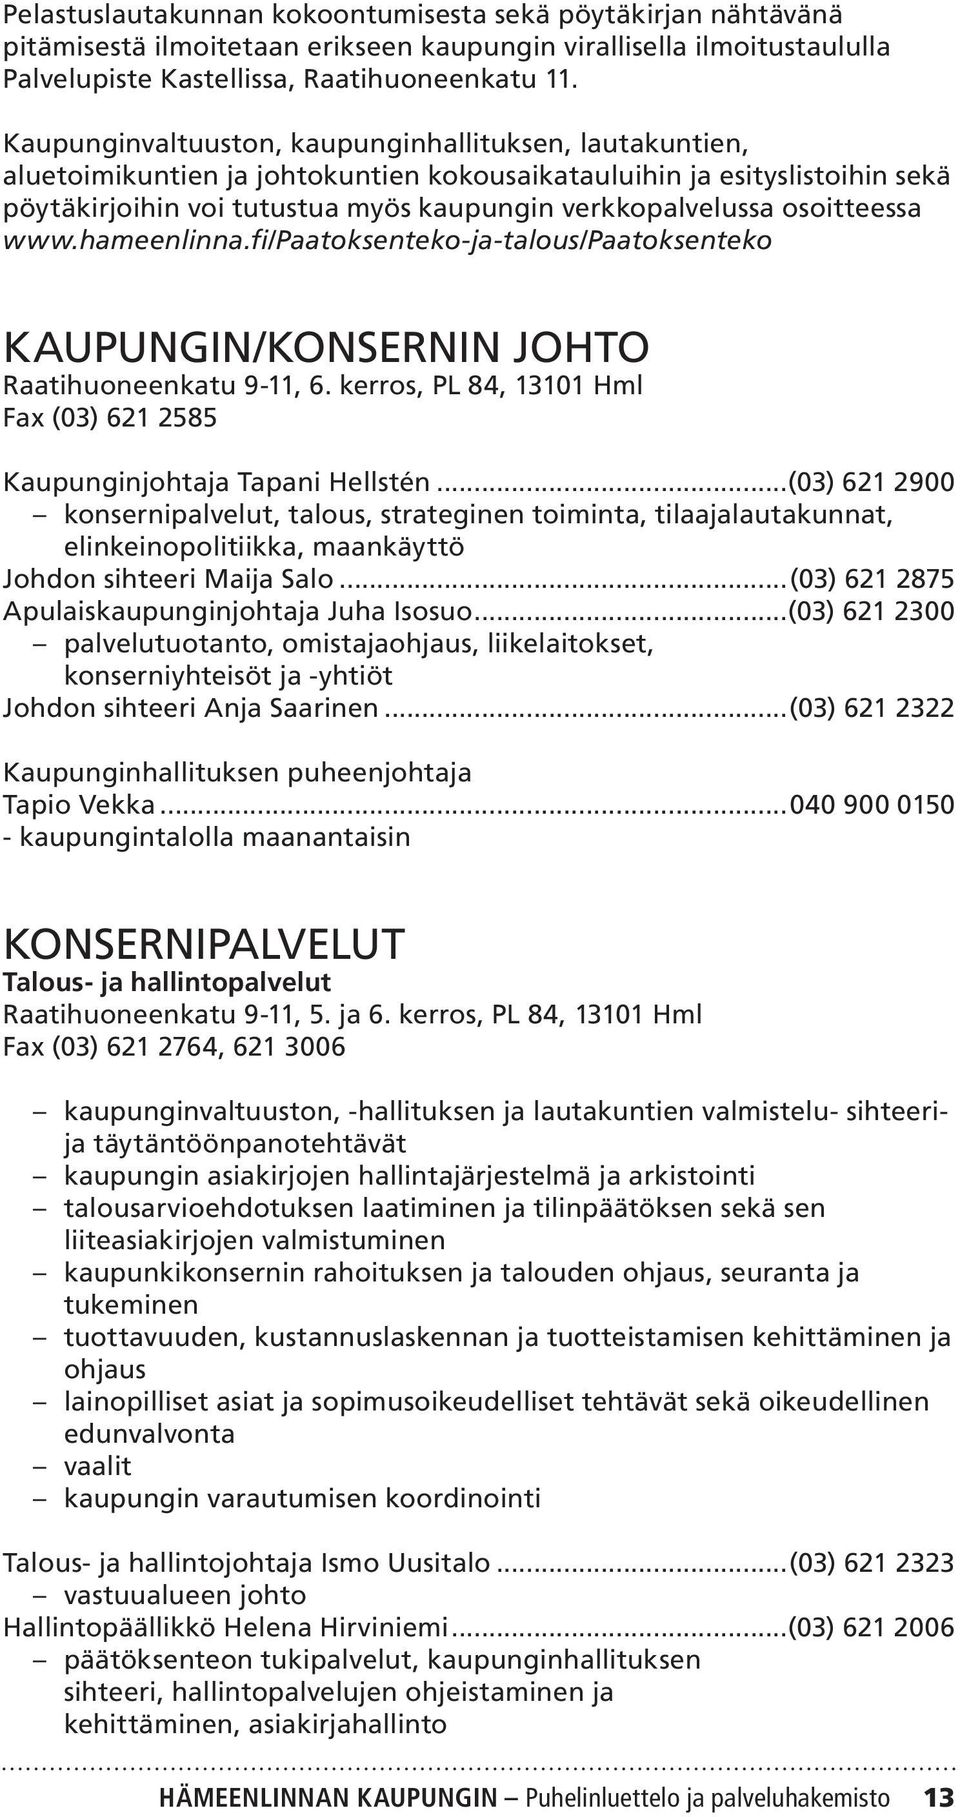 osoitteessa www.hameenlinna.fi/paatoksenteko-ja-talous/paatoksenteko KAUPUNGIN/KONSERNIN JOHTO Raatihuoneenkatu 9-11, 6. kerros, PL 84, 13101 Hml Fax (03) 621 2585 Kaupunginjohtaja Tapani Hellstén.